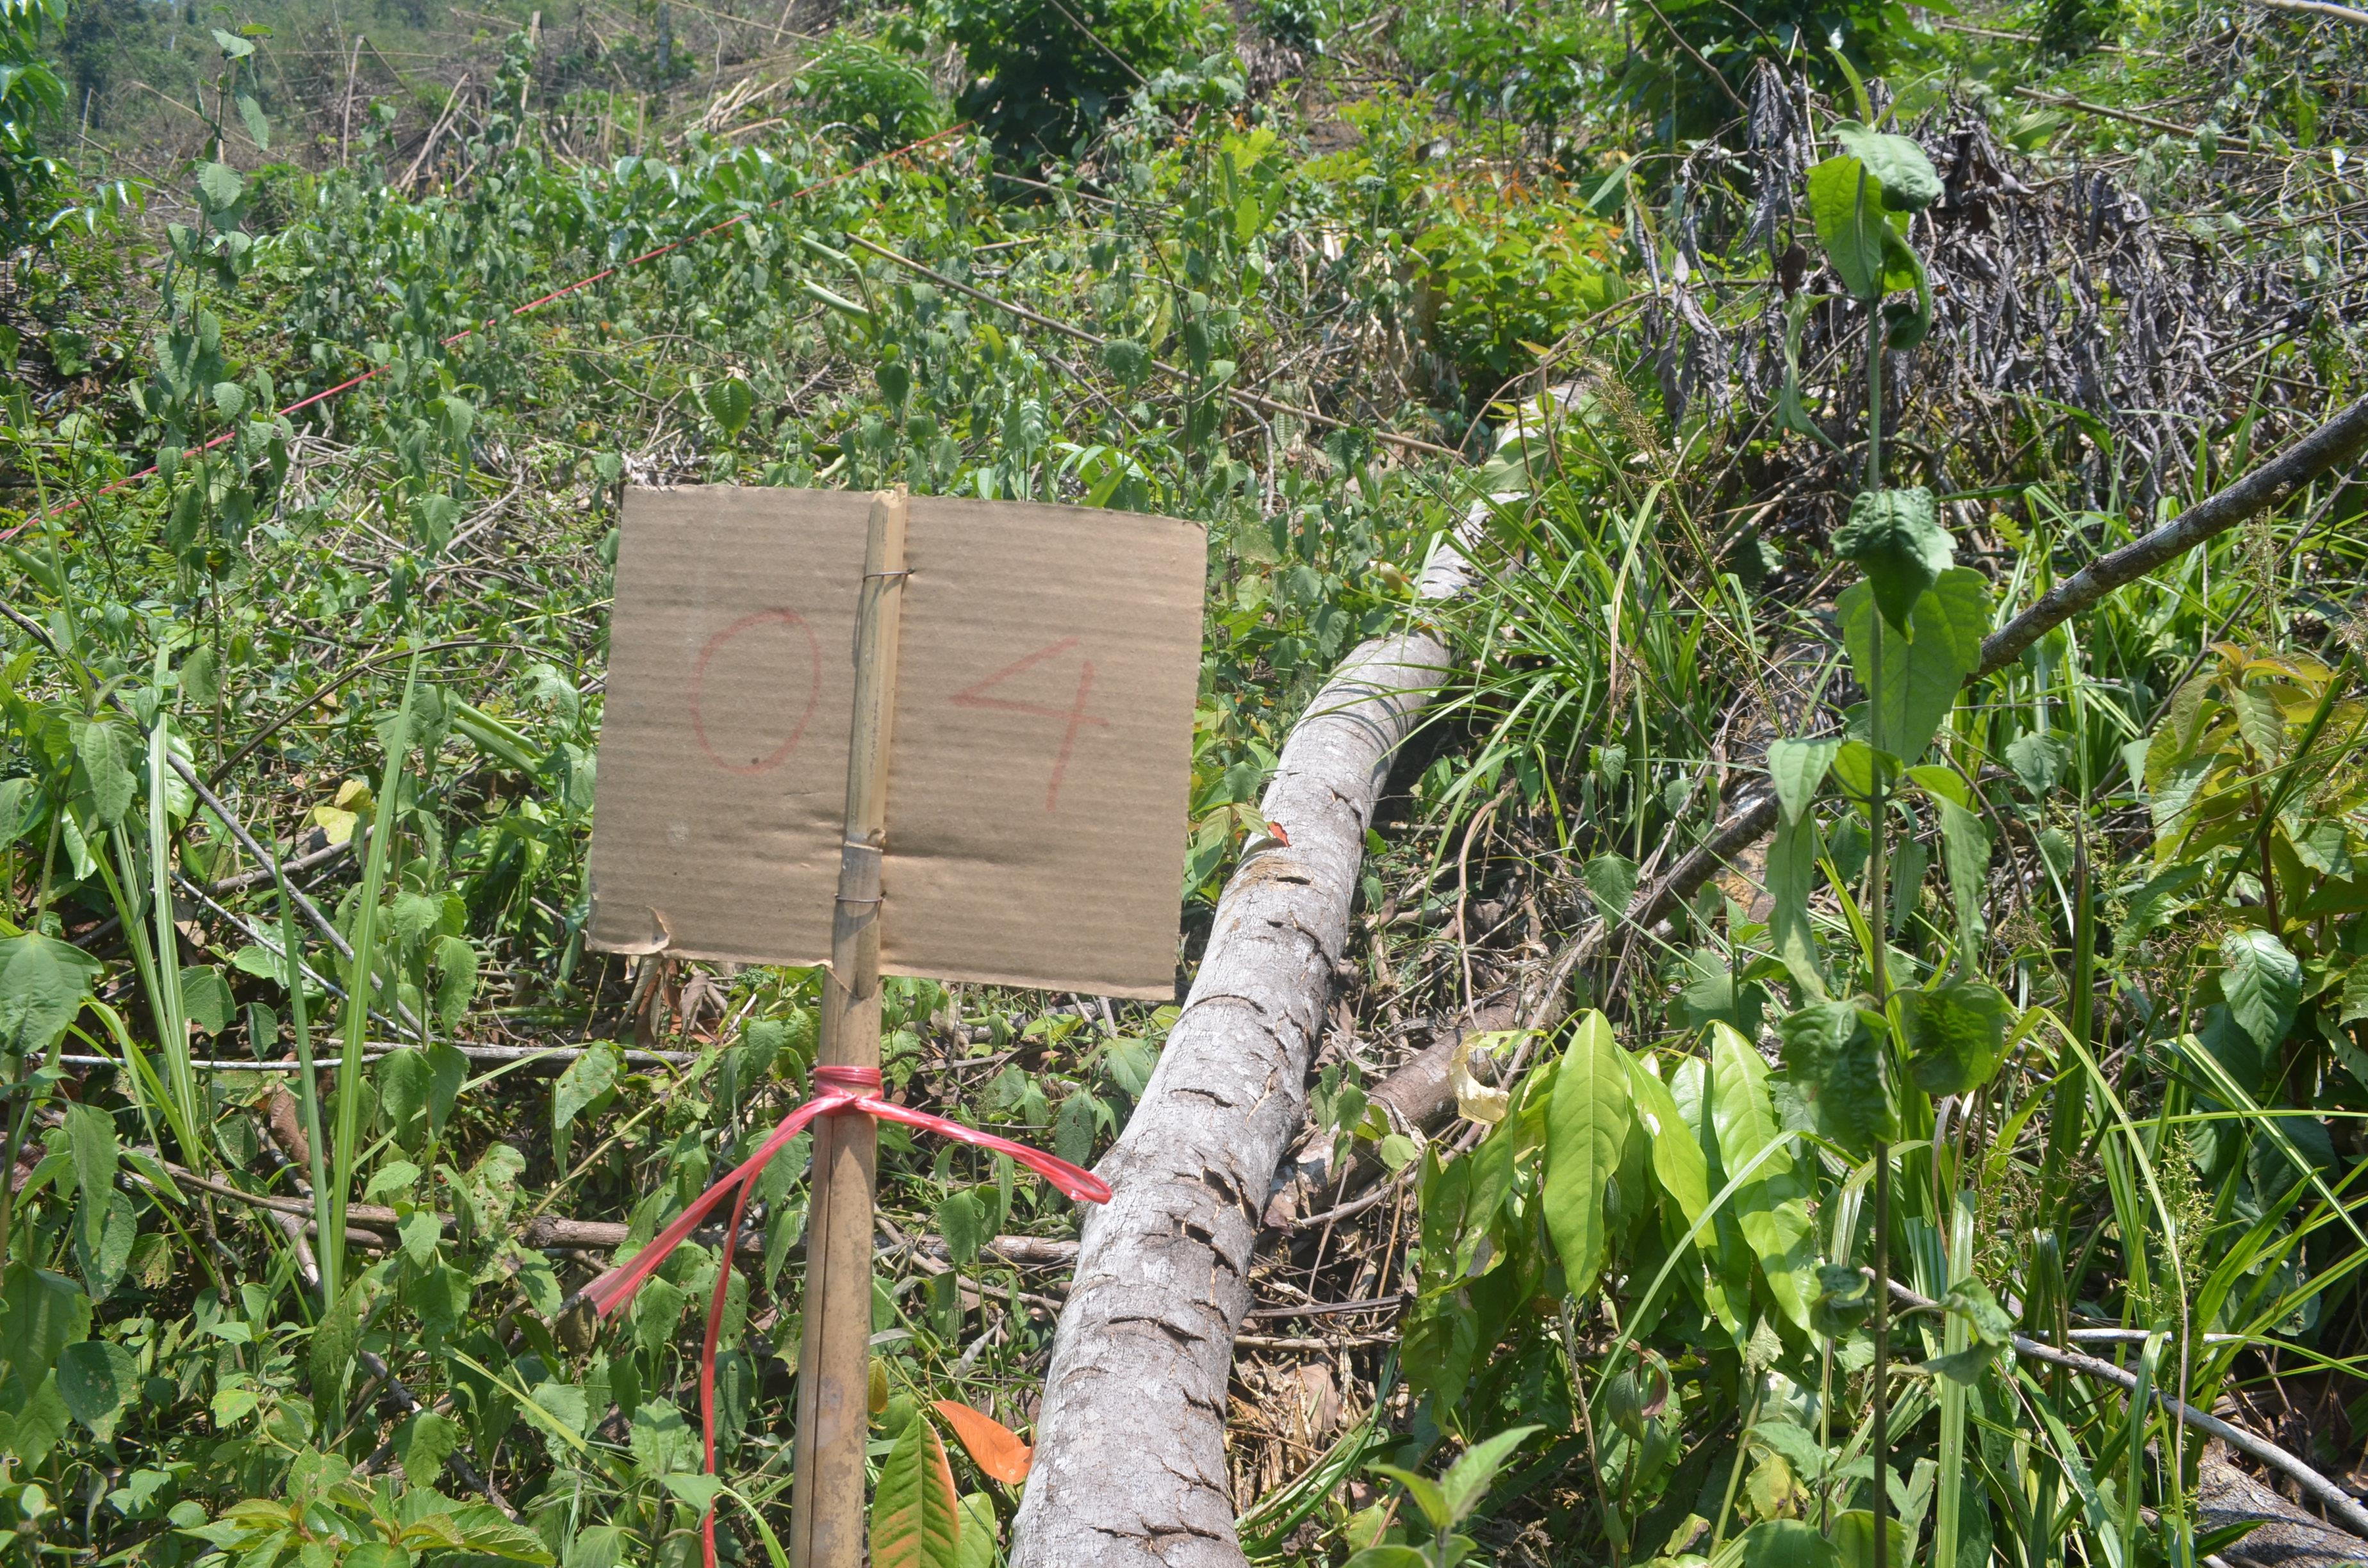 Dấu hiệu của việc thực hiện kiểm tra hiện trường do các cơ quan chức năng thực hiện tại khu vực rừng bị chặt phá. Ảnh: Nhật Lân